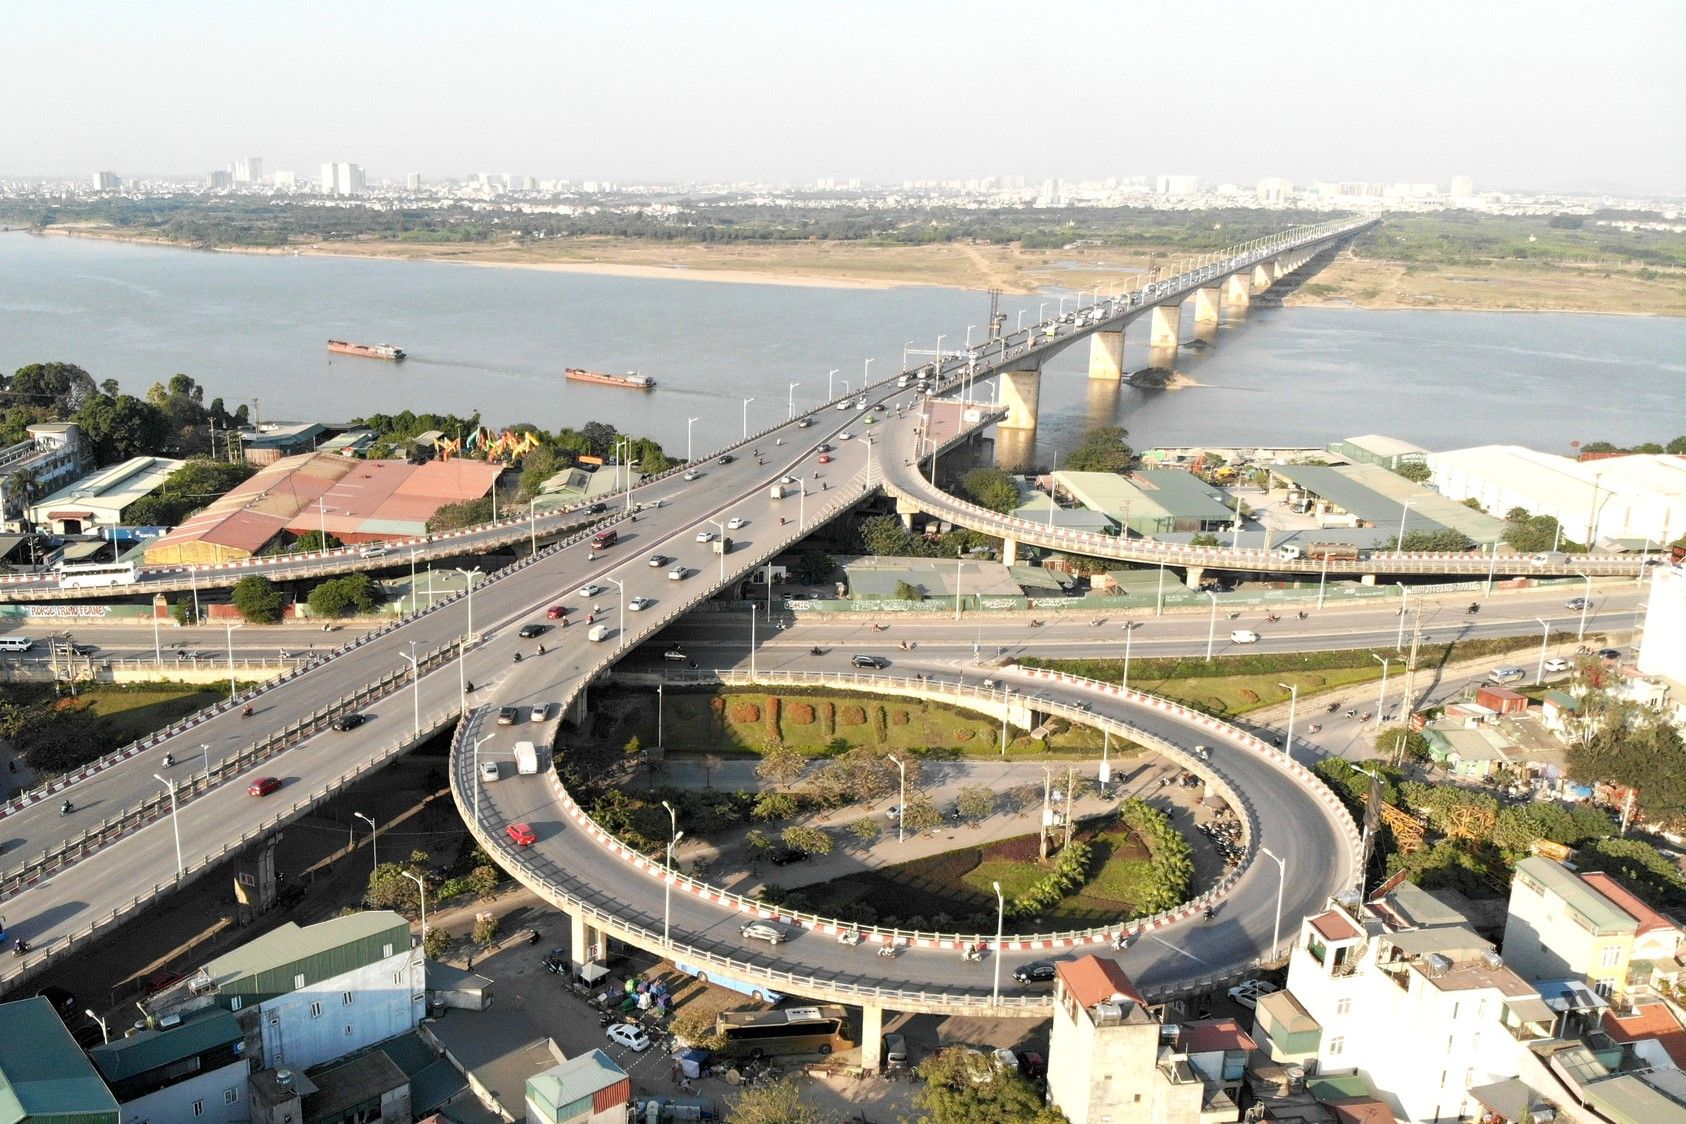 Cập nhật tiến độ một số dự án giao thông nổi bật ở Hà Nội đã và sắp hoàn thành từ nay tới 2022